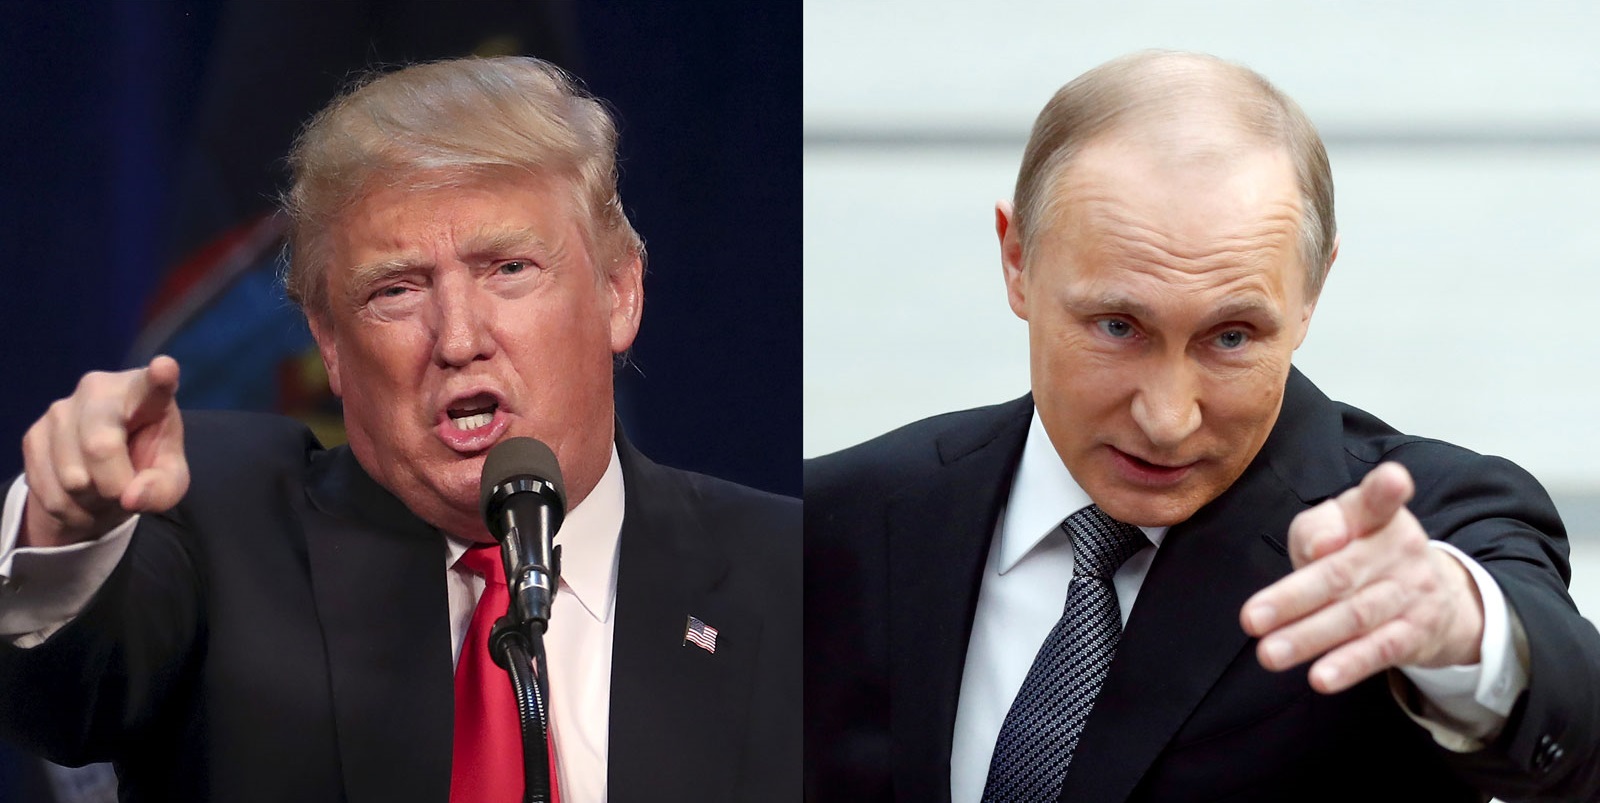 Presiden Amerika Serikat Donald Trump (kiri) menerima kecaman Presiden Rusia Vladimir Putin, akibat agresi yang dilayangkan  AS pada Suriah. (Foto: Ilustrasi)